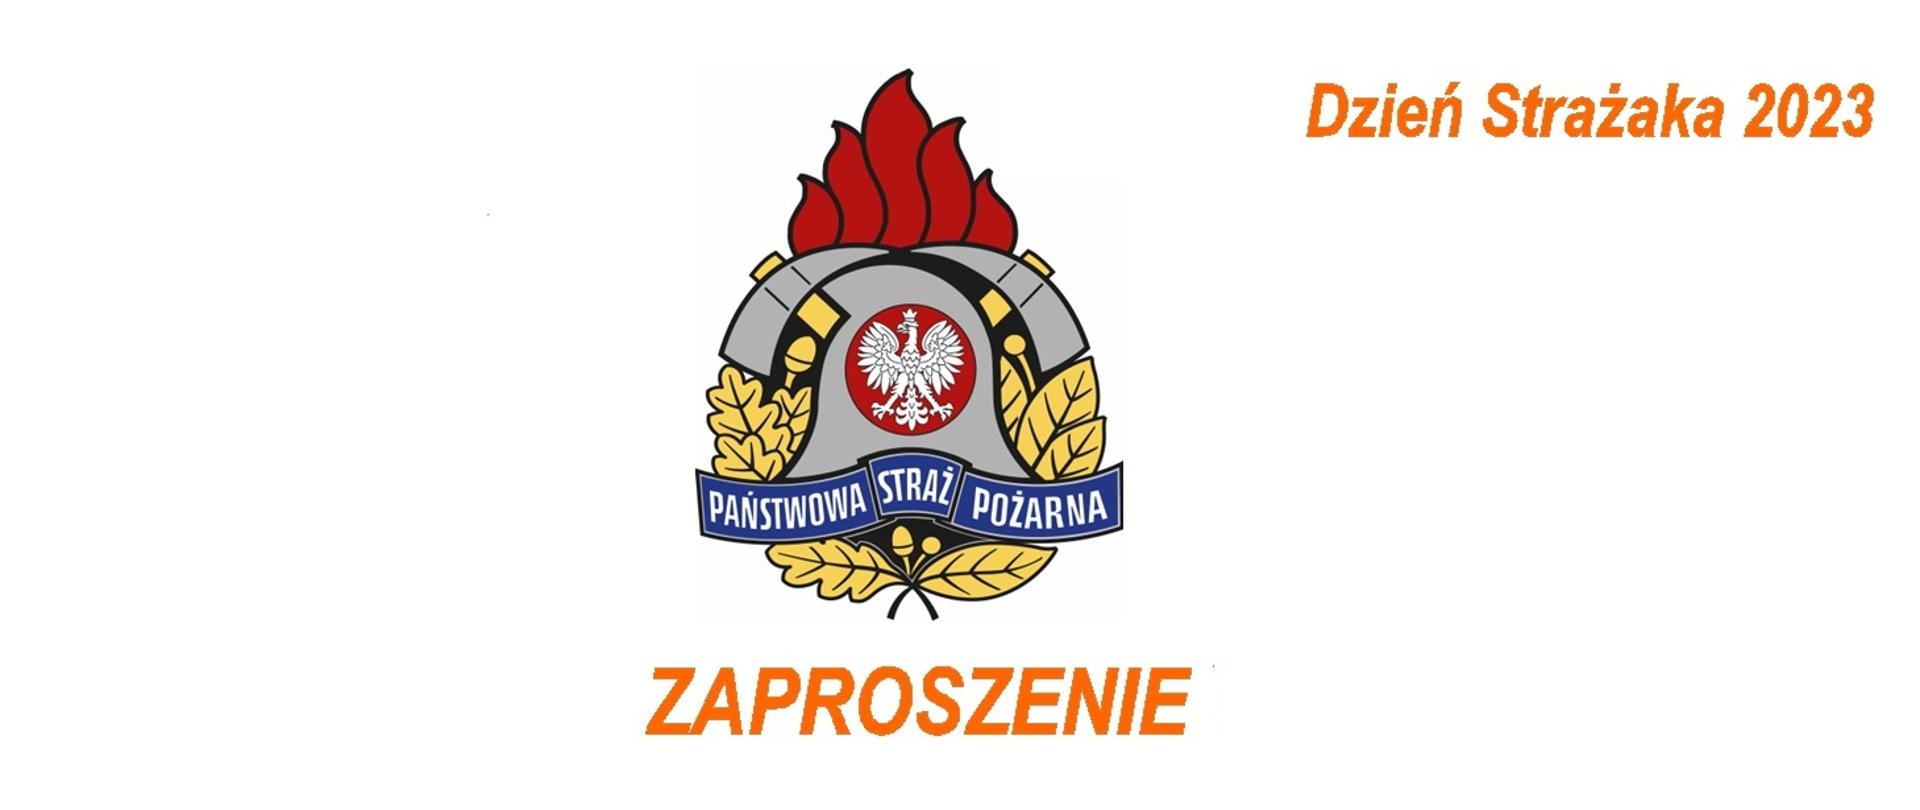 Obraz przedstawia logo PSP i napis "Zaproszenie" oraz "Dzień Strażaka 2023"